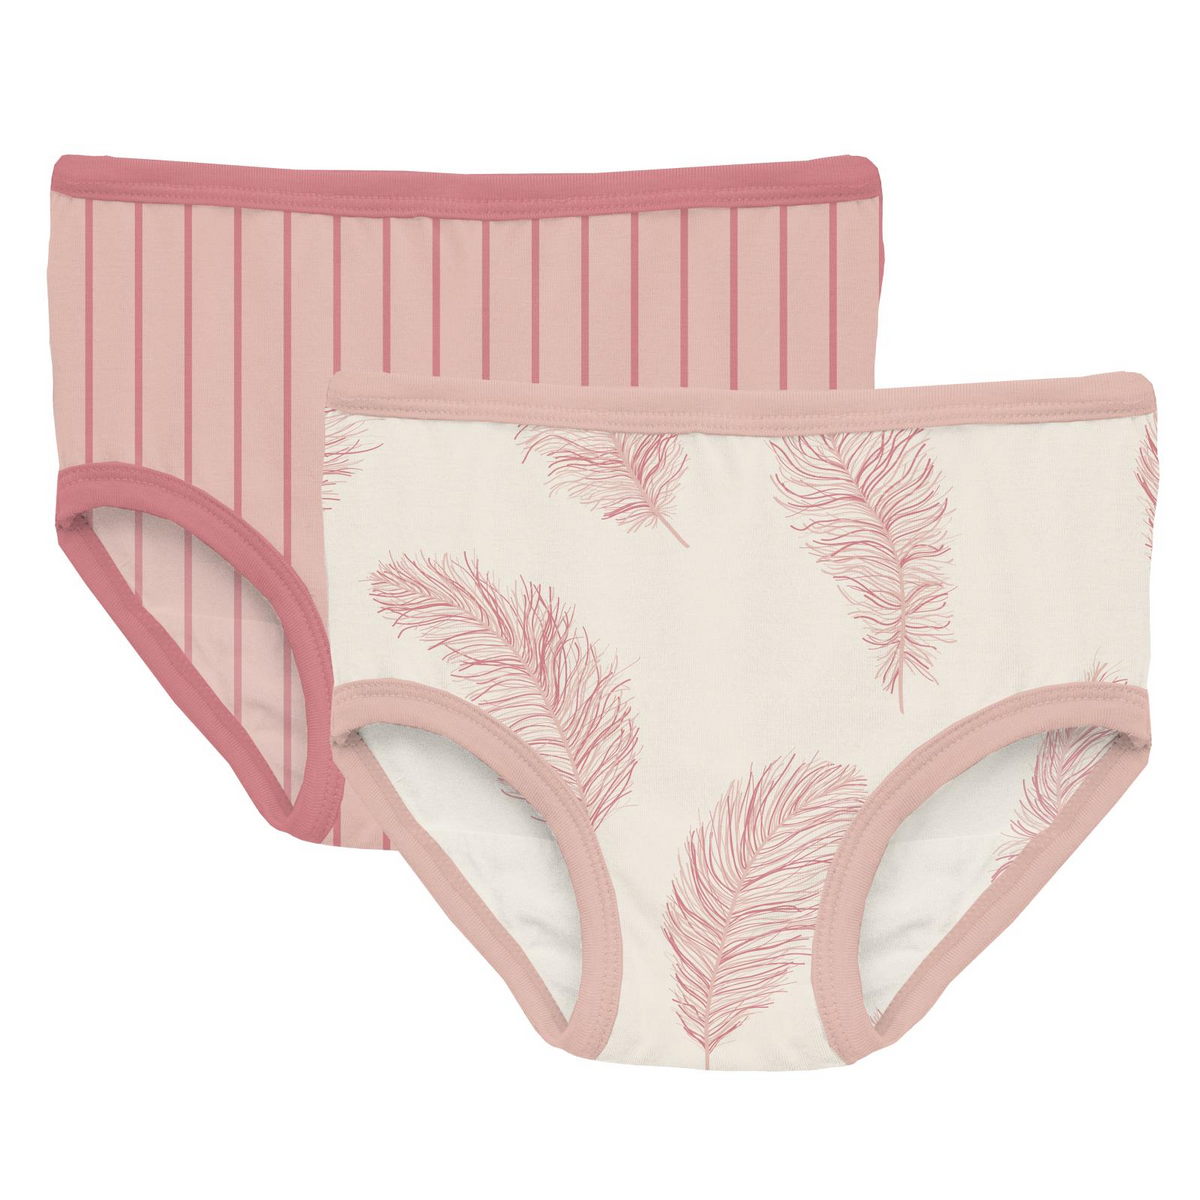 Kickee Pants Print Girls Underwear Macaroon Floral Vines